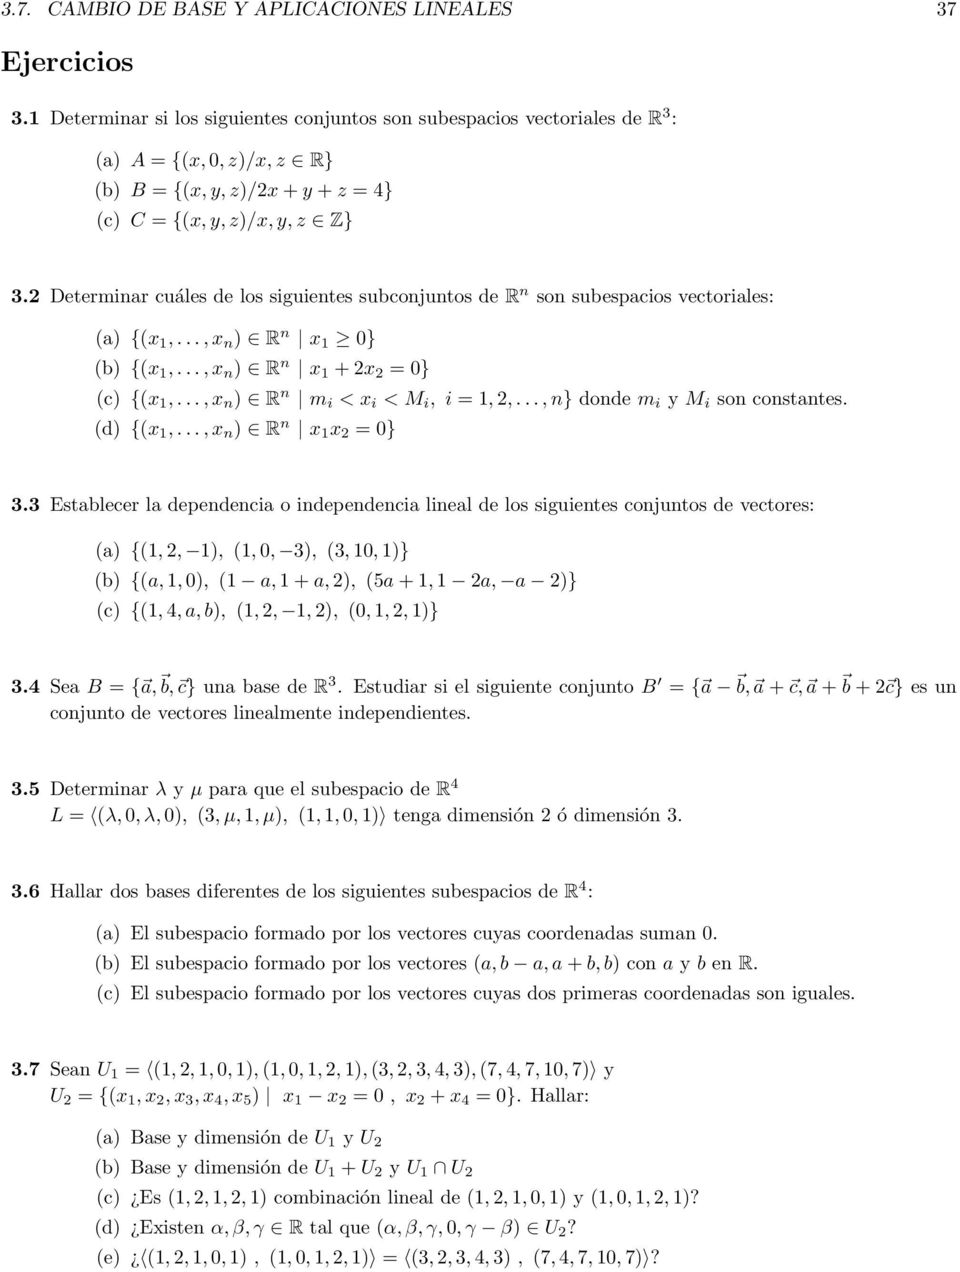 2 Determinar cuáles de los siguientes subconjuntos de R n son subespacios vectoriales: (a) {(x 1,..., x n ) R n x 1 0} (b) {(x 1,..., x n ) R n x 1 + 2x 2 = 0} (c) {(x 1,.